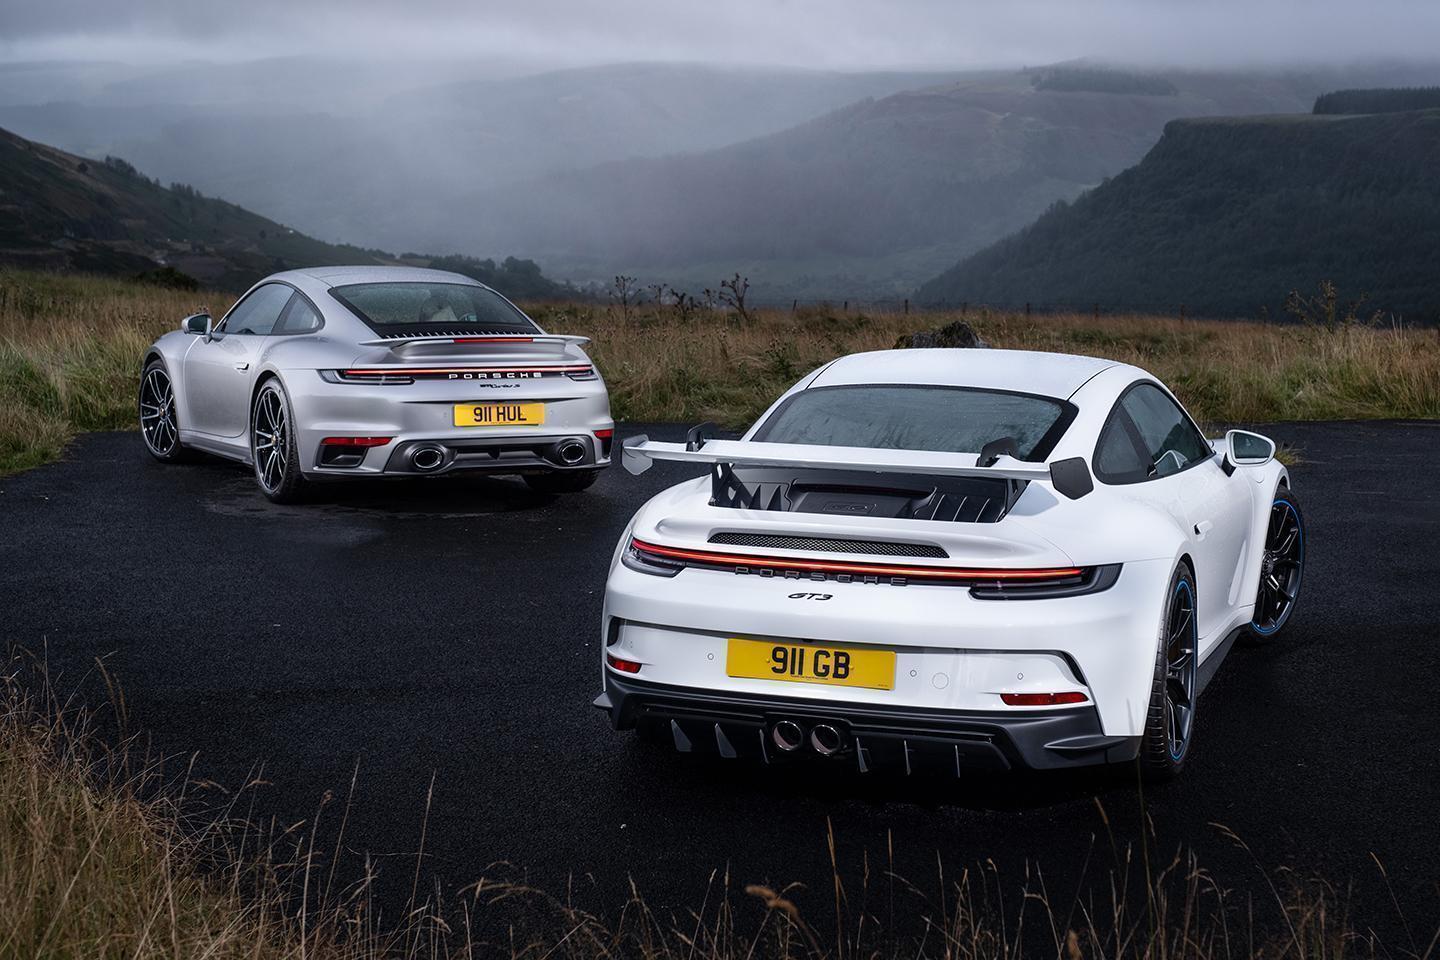 2021 Porsche 911 GT3 vs Porsche 911 Turbo S | PistonHeads UK